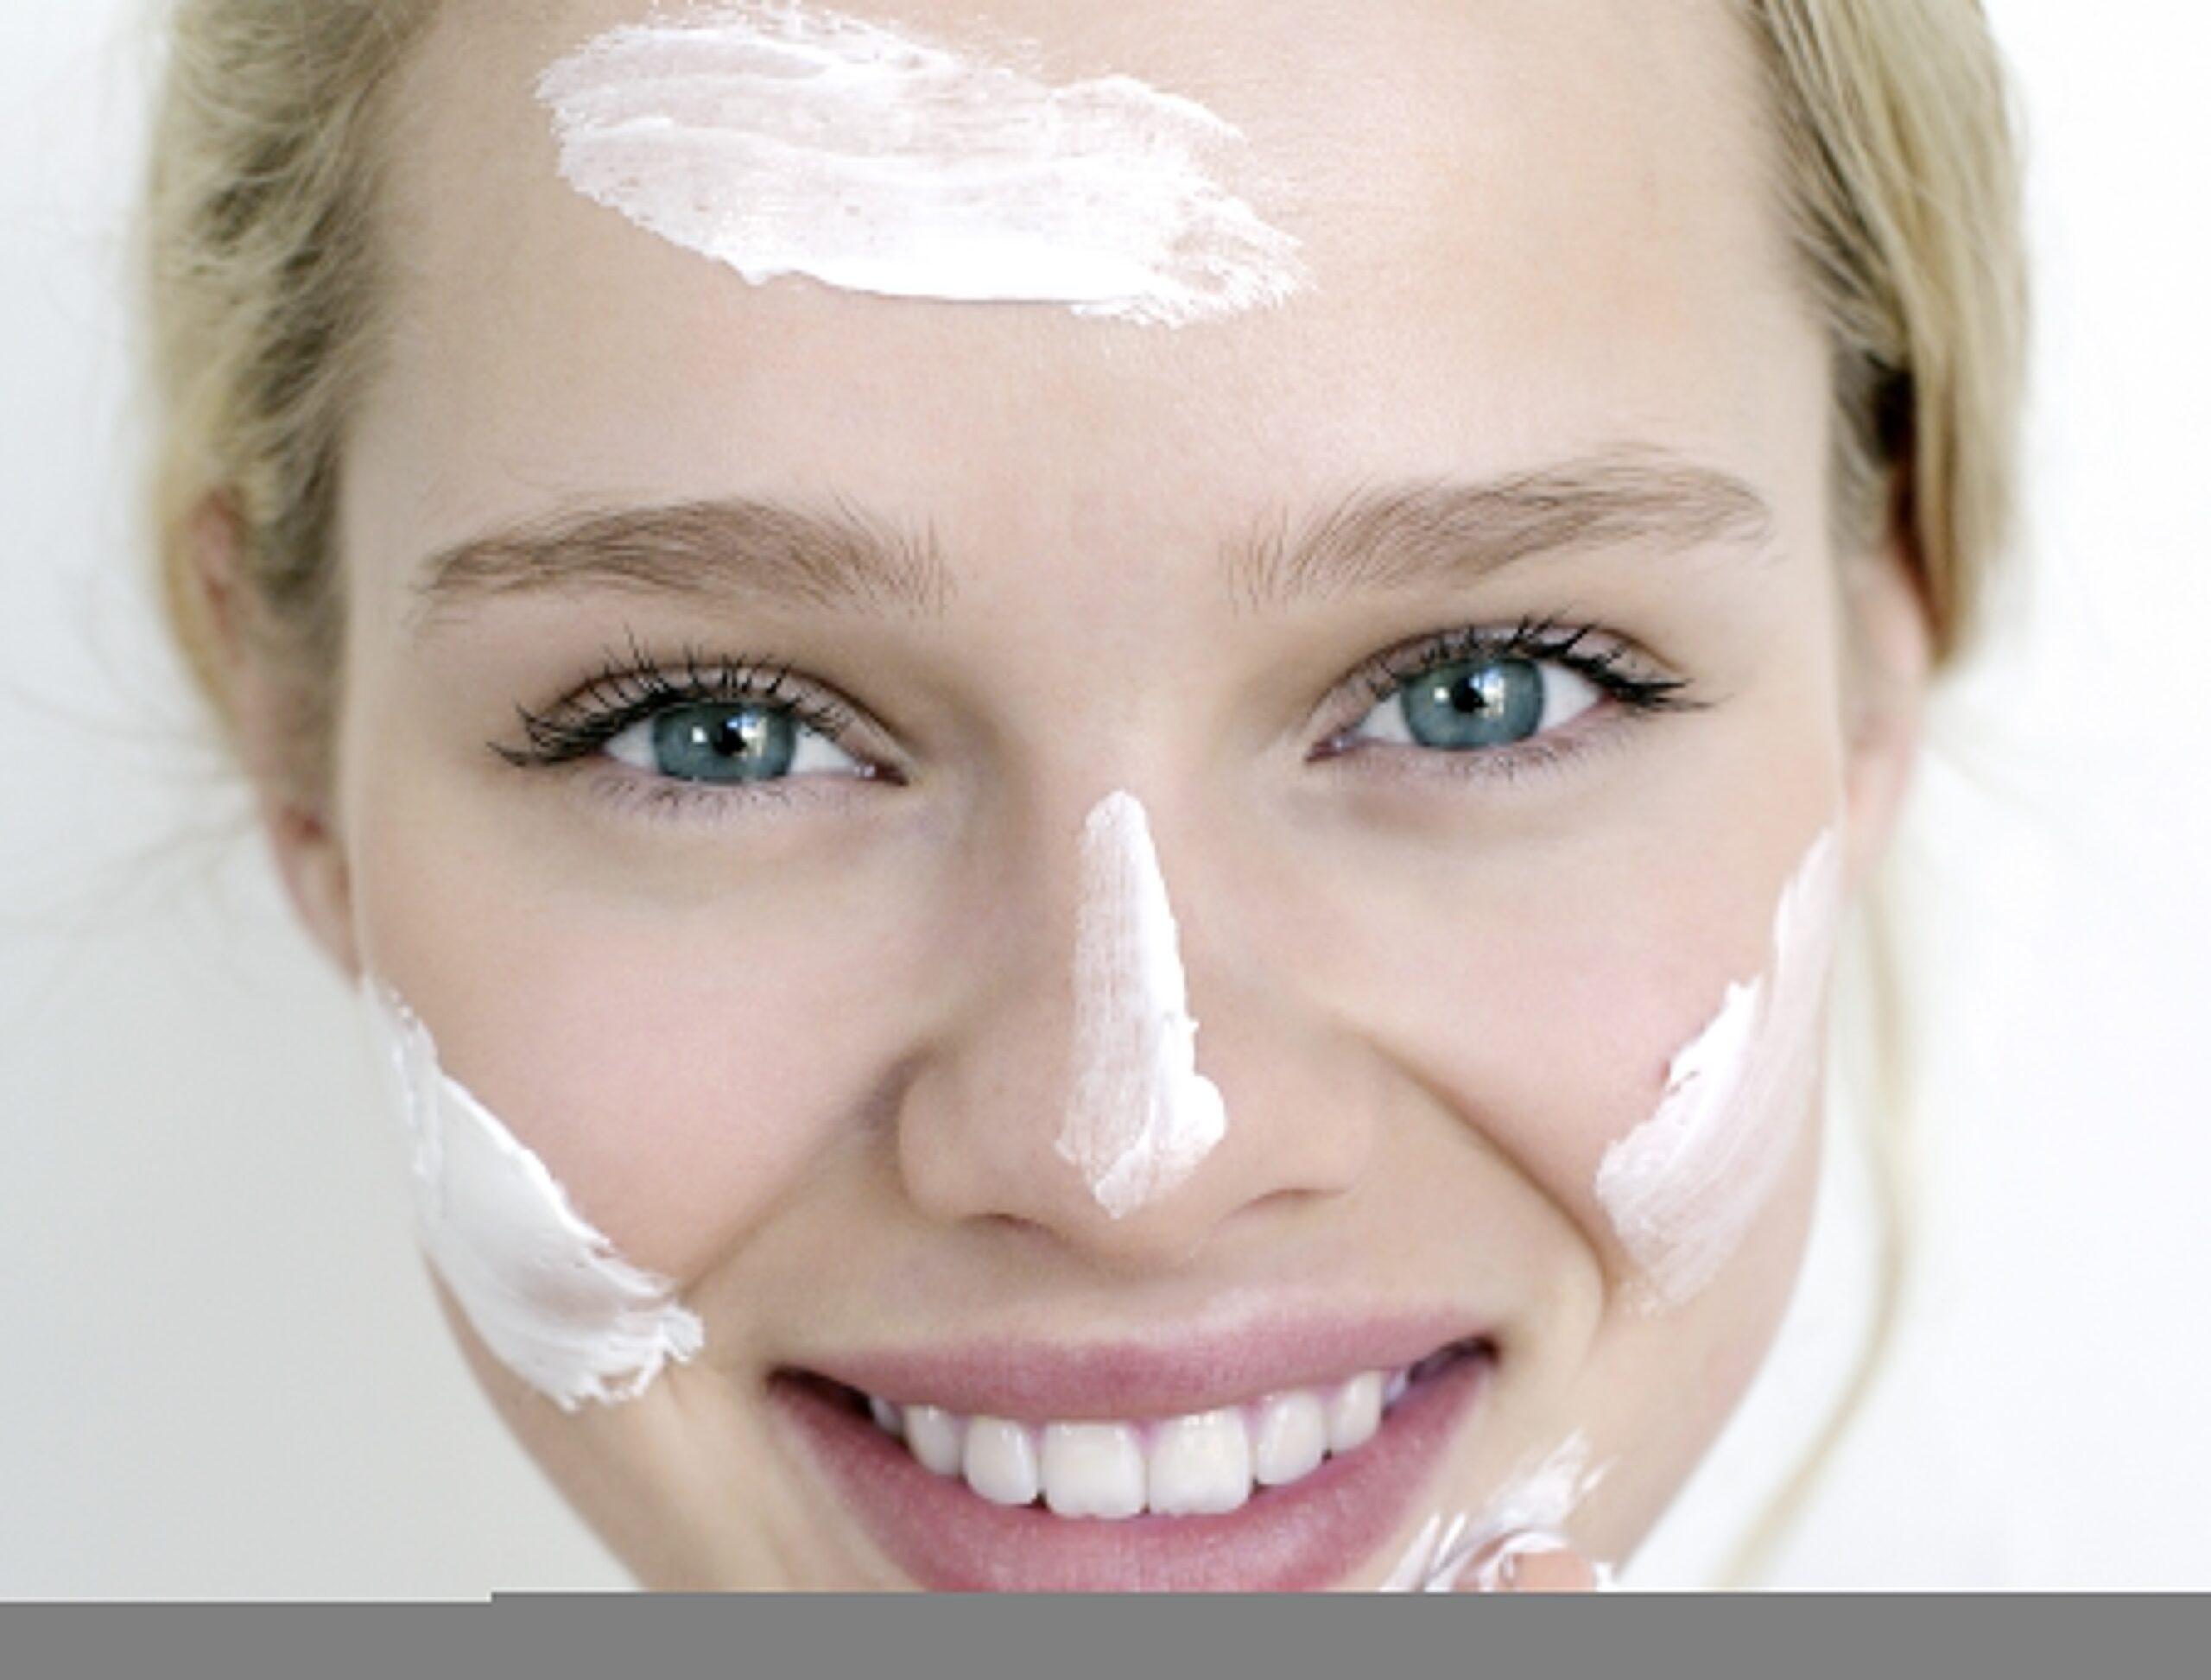 Gesunde Haut: Gesicht einer Frau mit Cremeklecksen